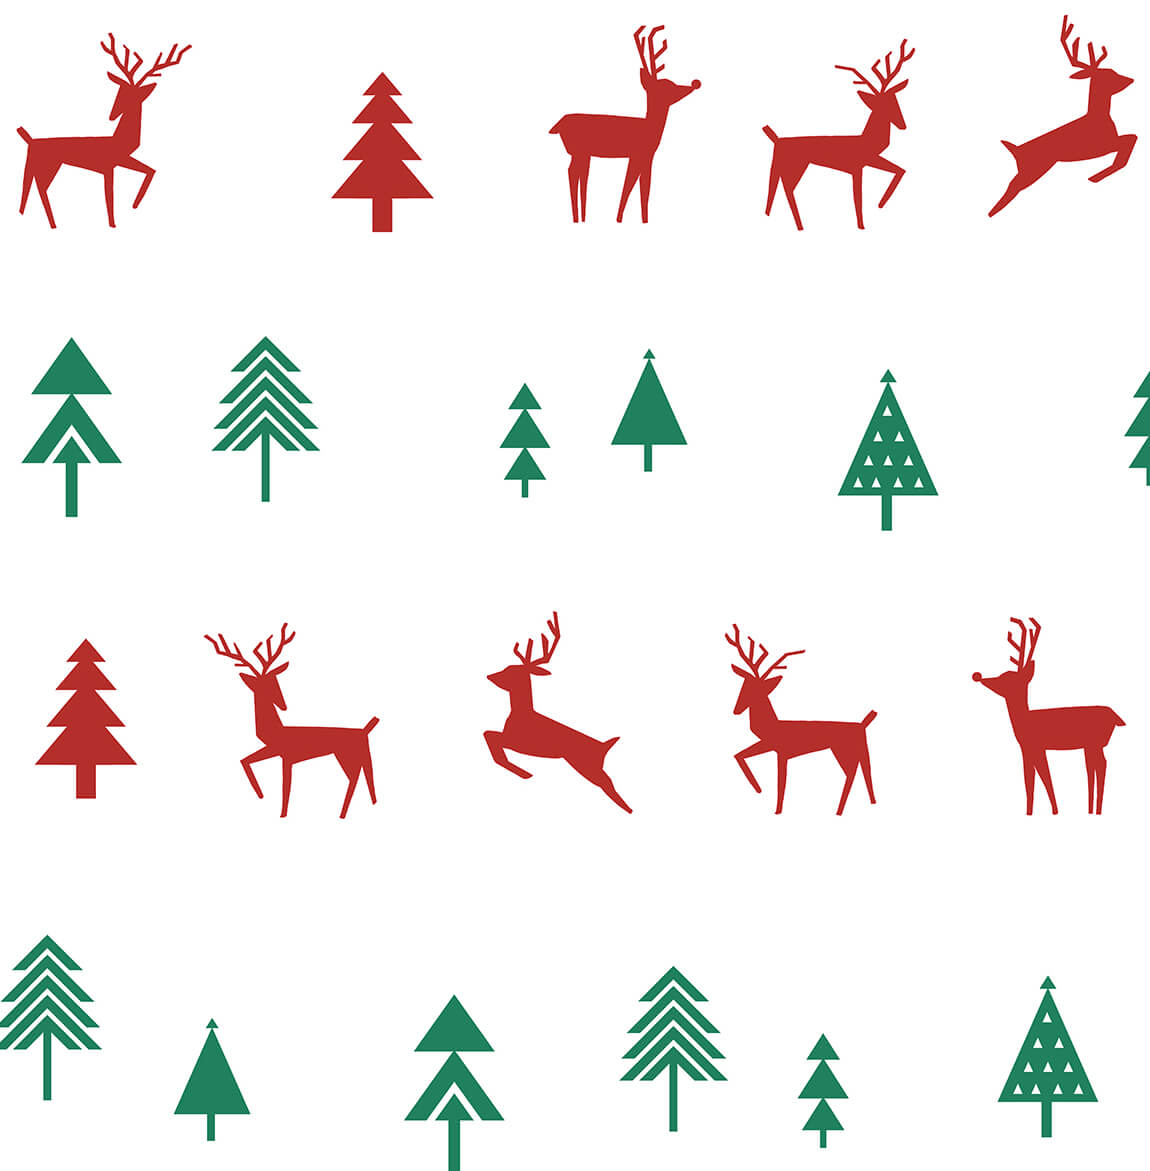 NextWall Run Run Reindeer Holiday Peel & Stick Wallpaper - Red & Green